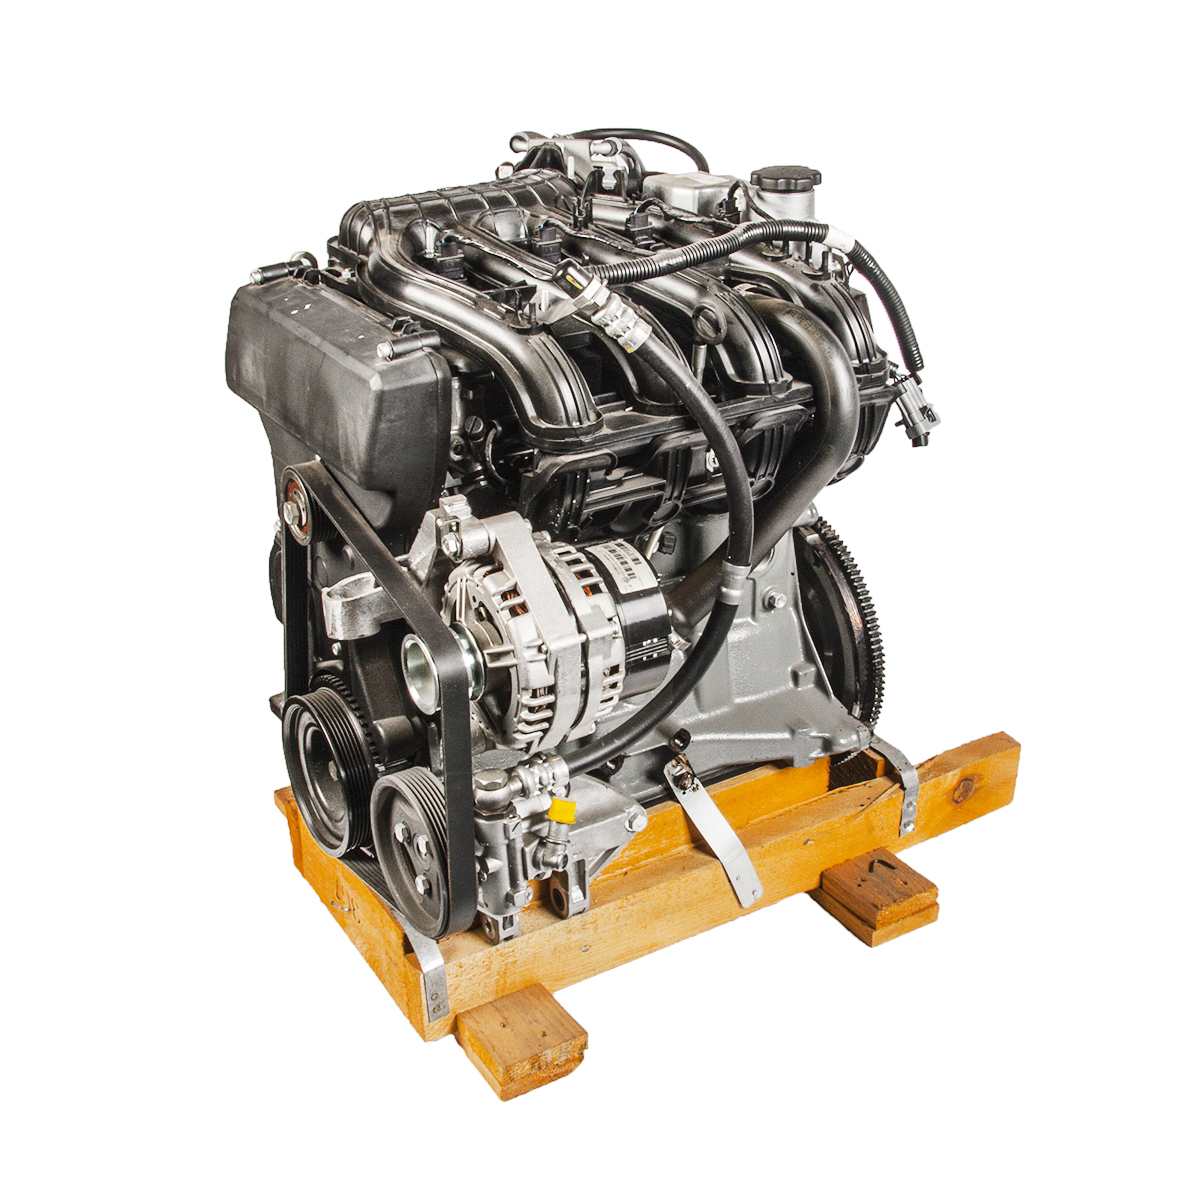 Двигатель ваз 21124, технические характеристики, какое масло лить, ремонт двигателя 21124, доработки и тюнинг, схема устройства, рекомендации по обслуживанию